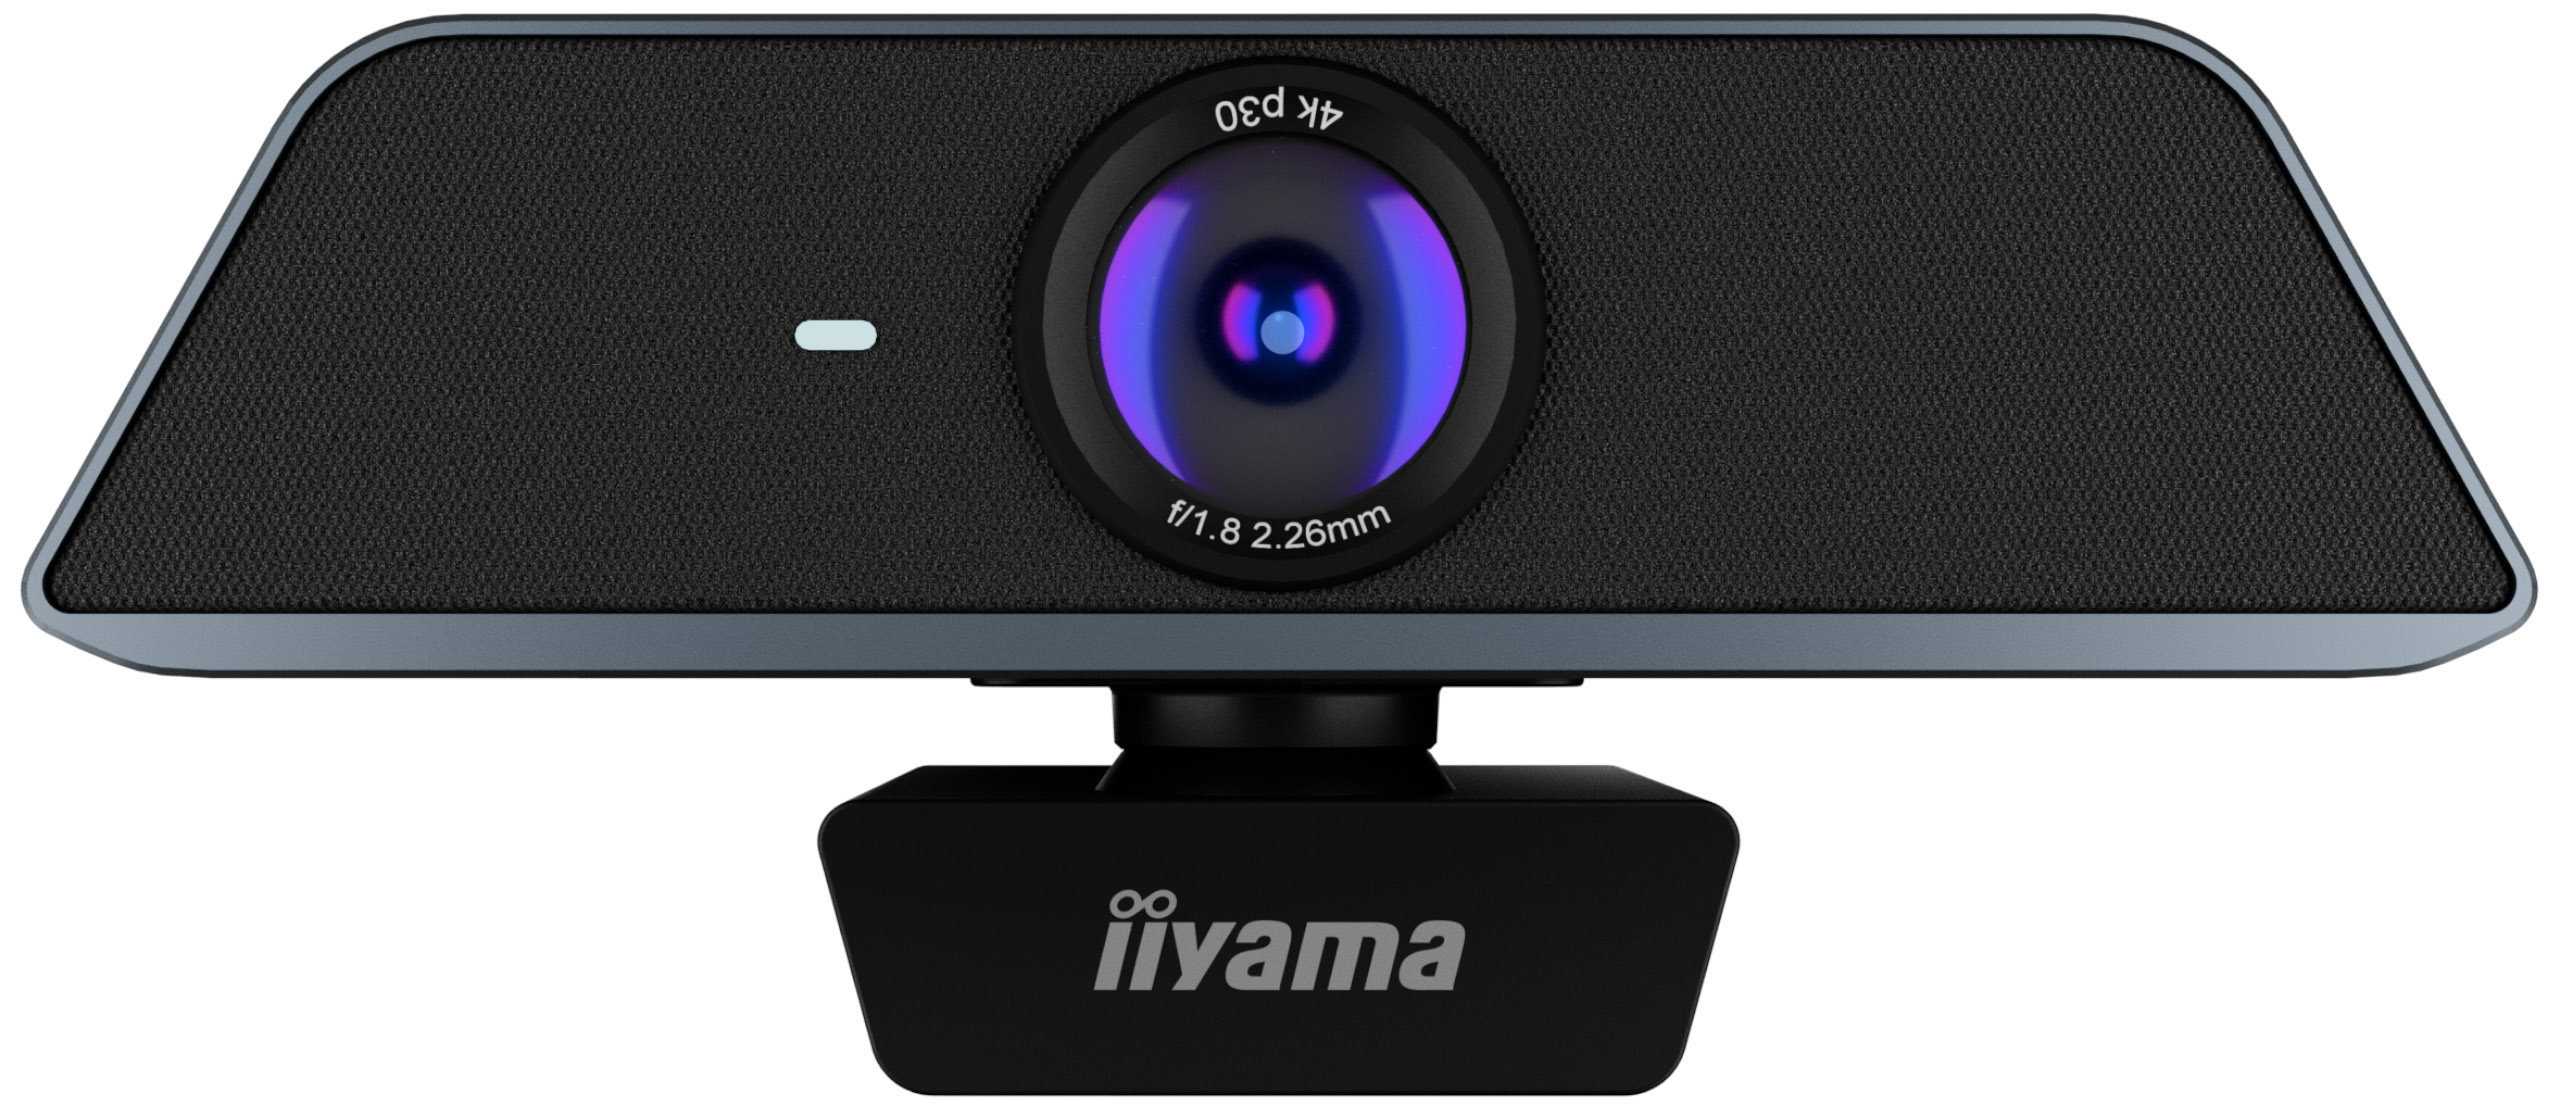 Iiyama UC CAM120UL-1 | Konferenz-Webcam mit 4K-Auflösung, 120° Sichtfeld und Auto-Framing